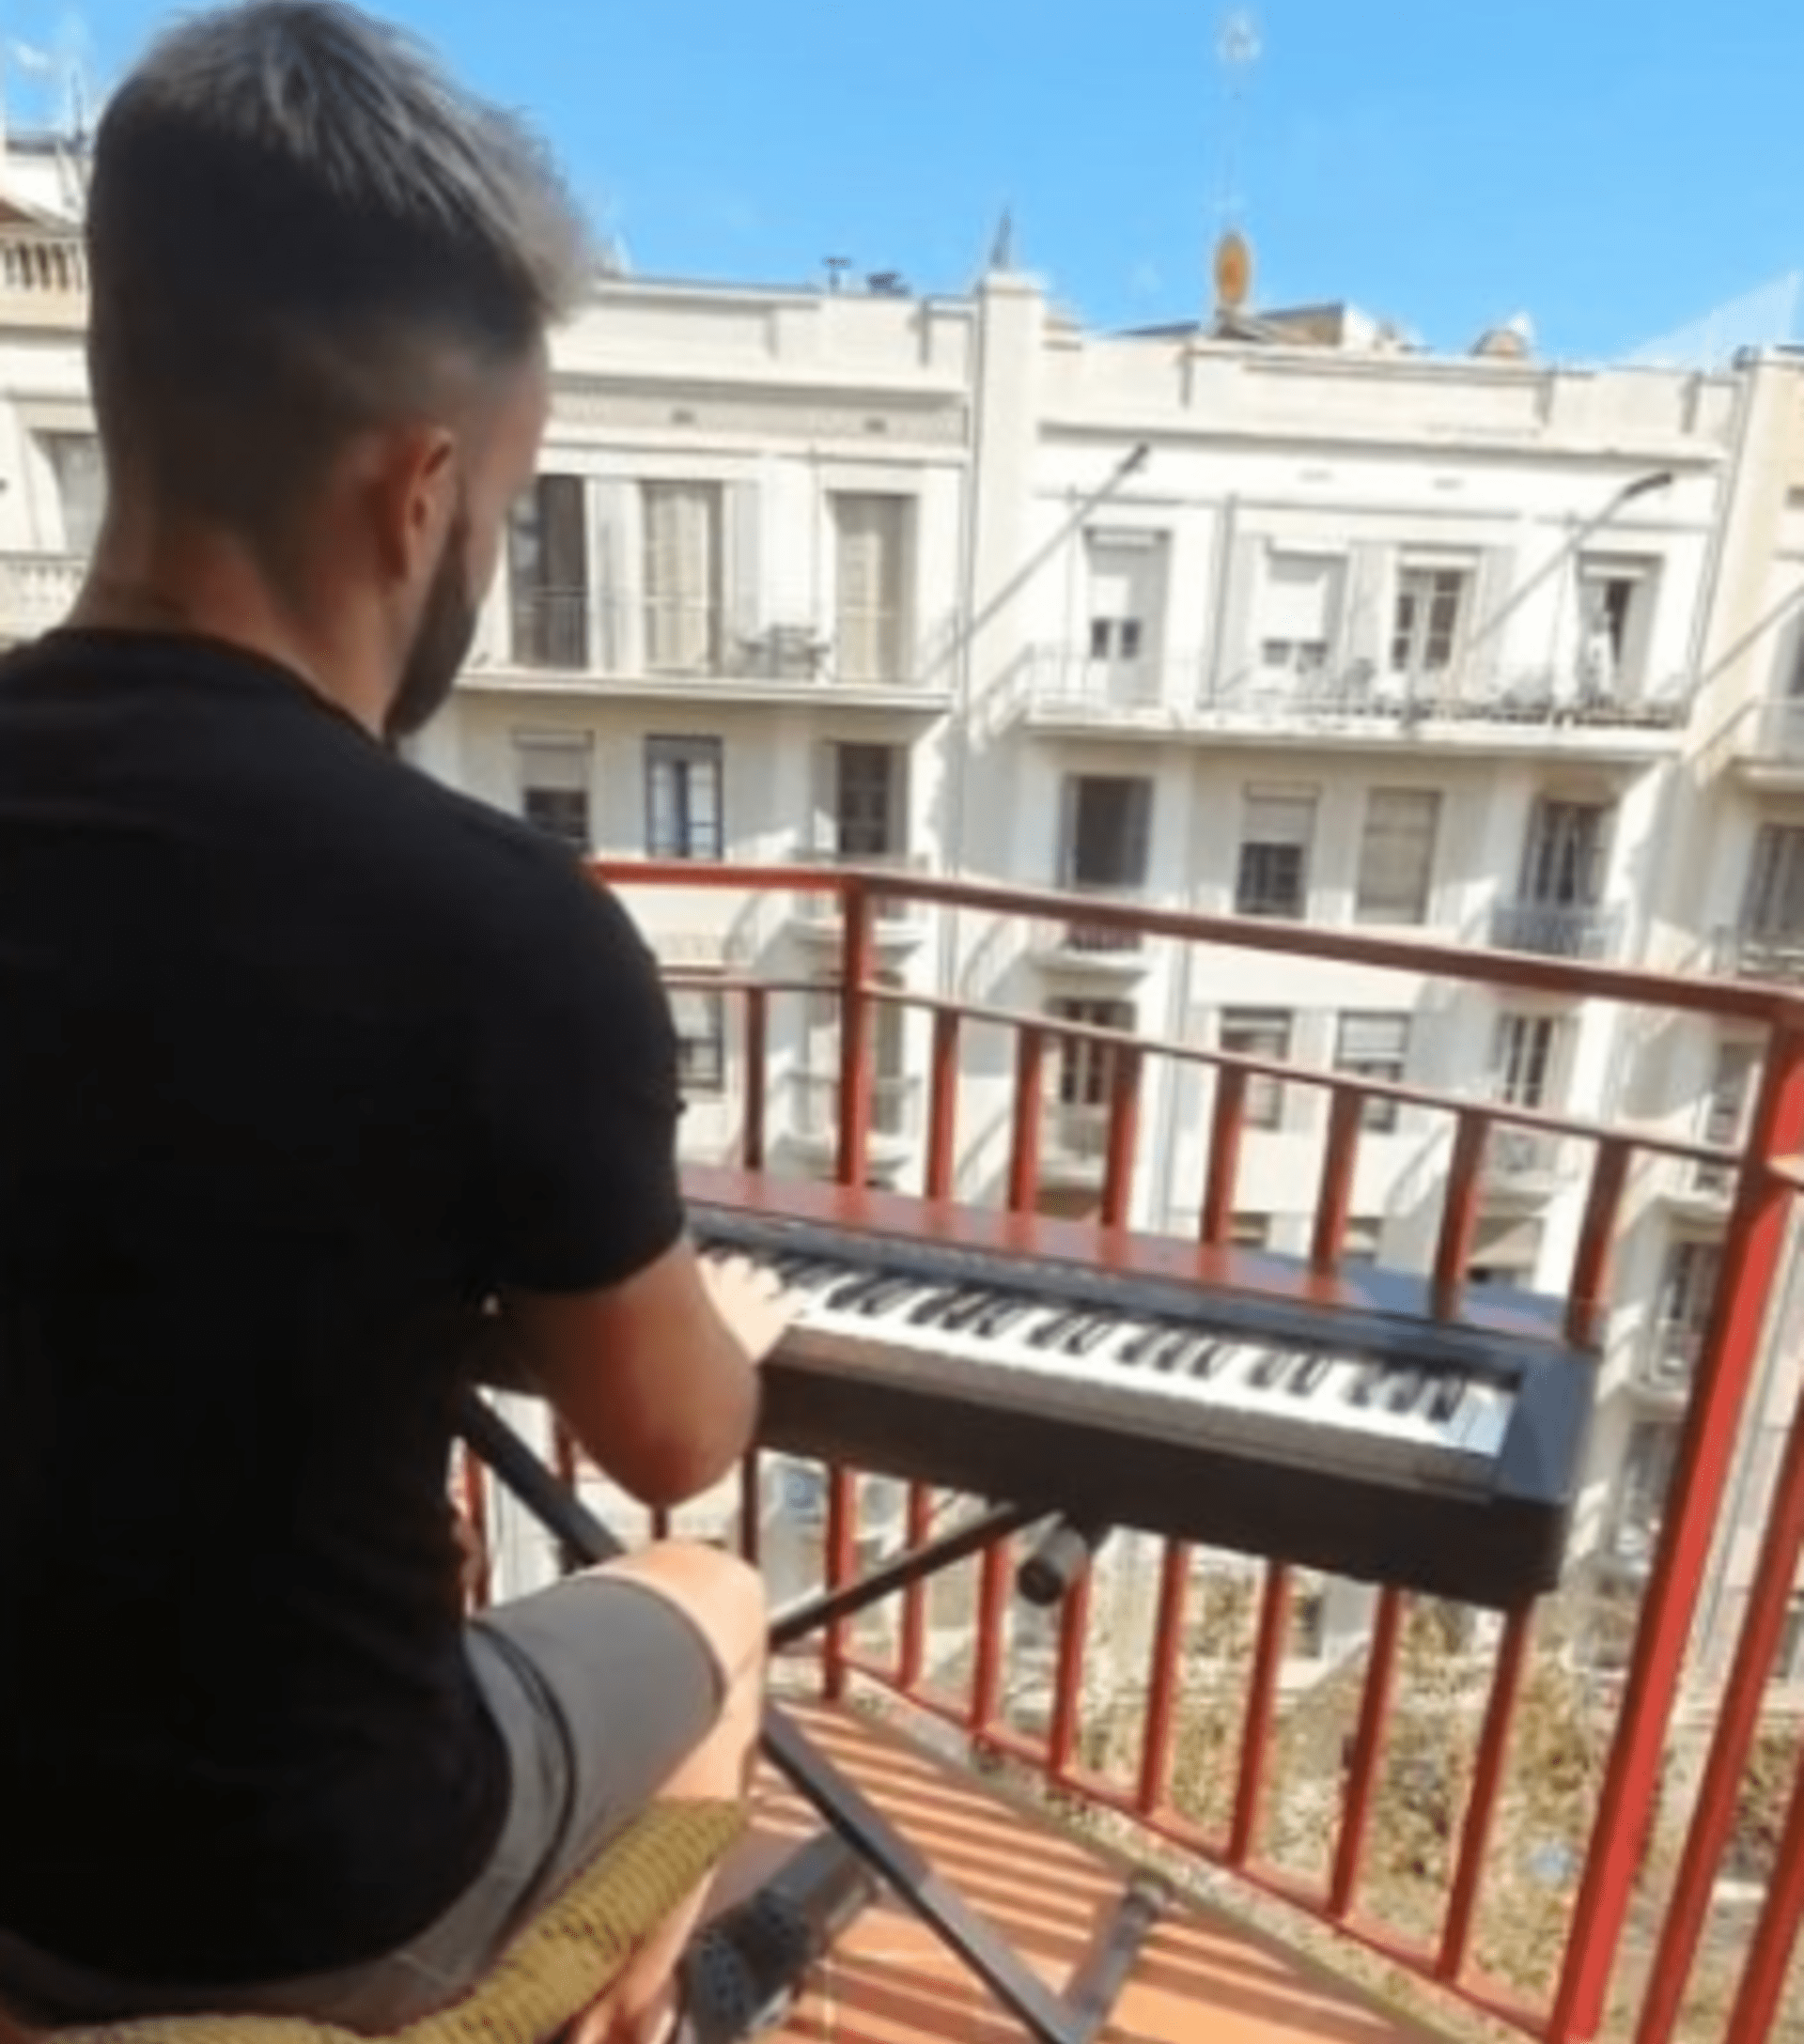 Klavírista zahrál na balkoně titulní píseň z Titaniku